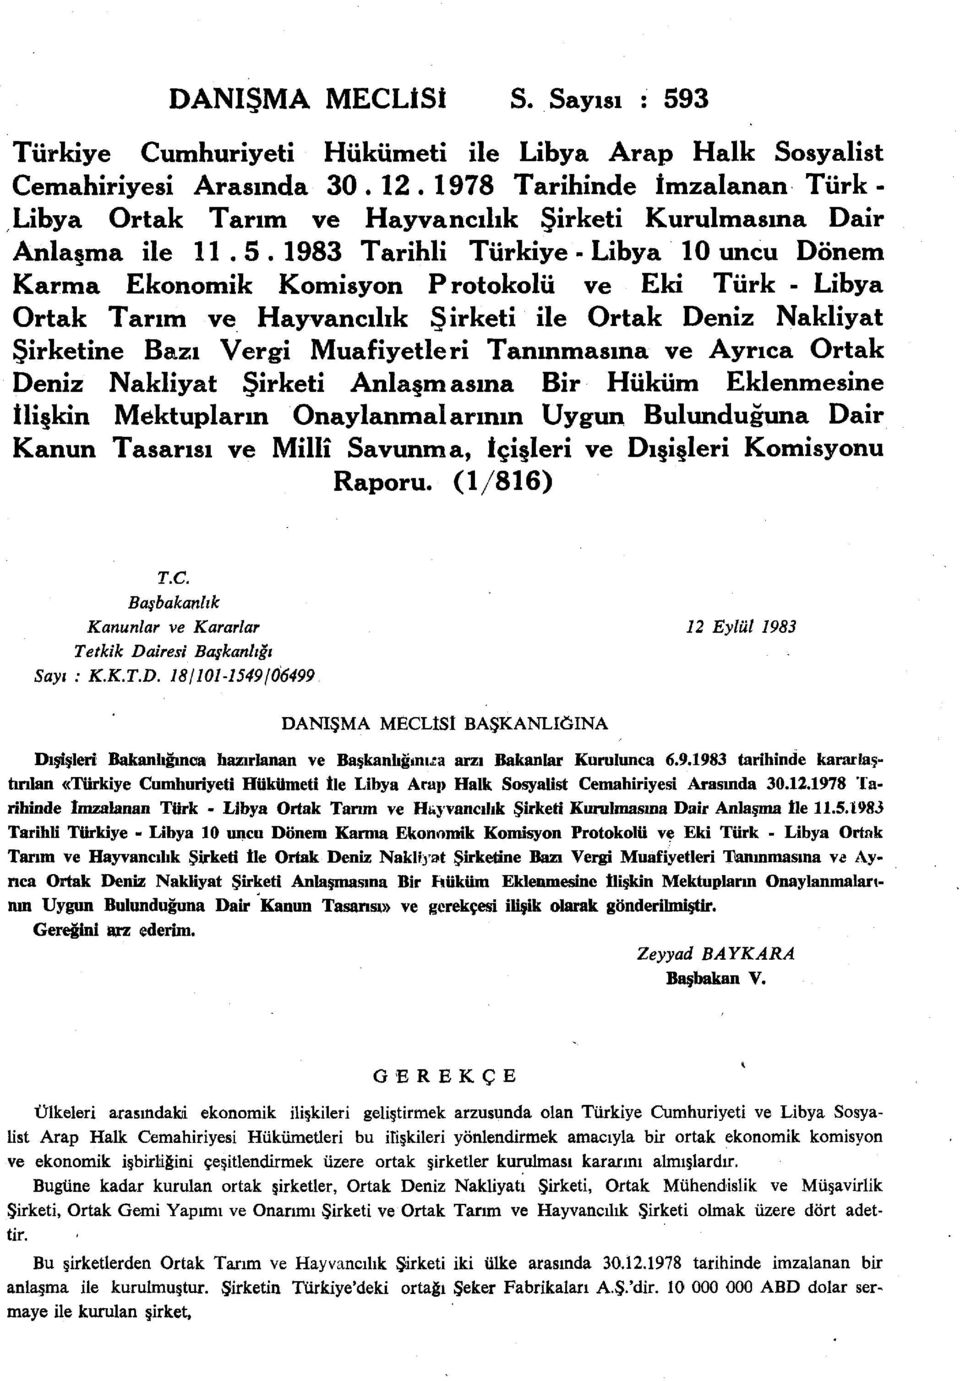 1983 Tarihli Türkiye - Libya 10 uncu Dönem Karma Ekonomik Komisyon Protokolü ve Eki Türk - Libya Ortak Tarım ve Hayvancılık Şirketi ile Ortak Deniz Nakliyat Şirketine Bazı Vergi Muafiyetleri